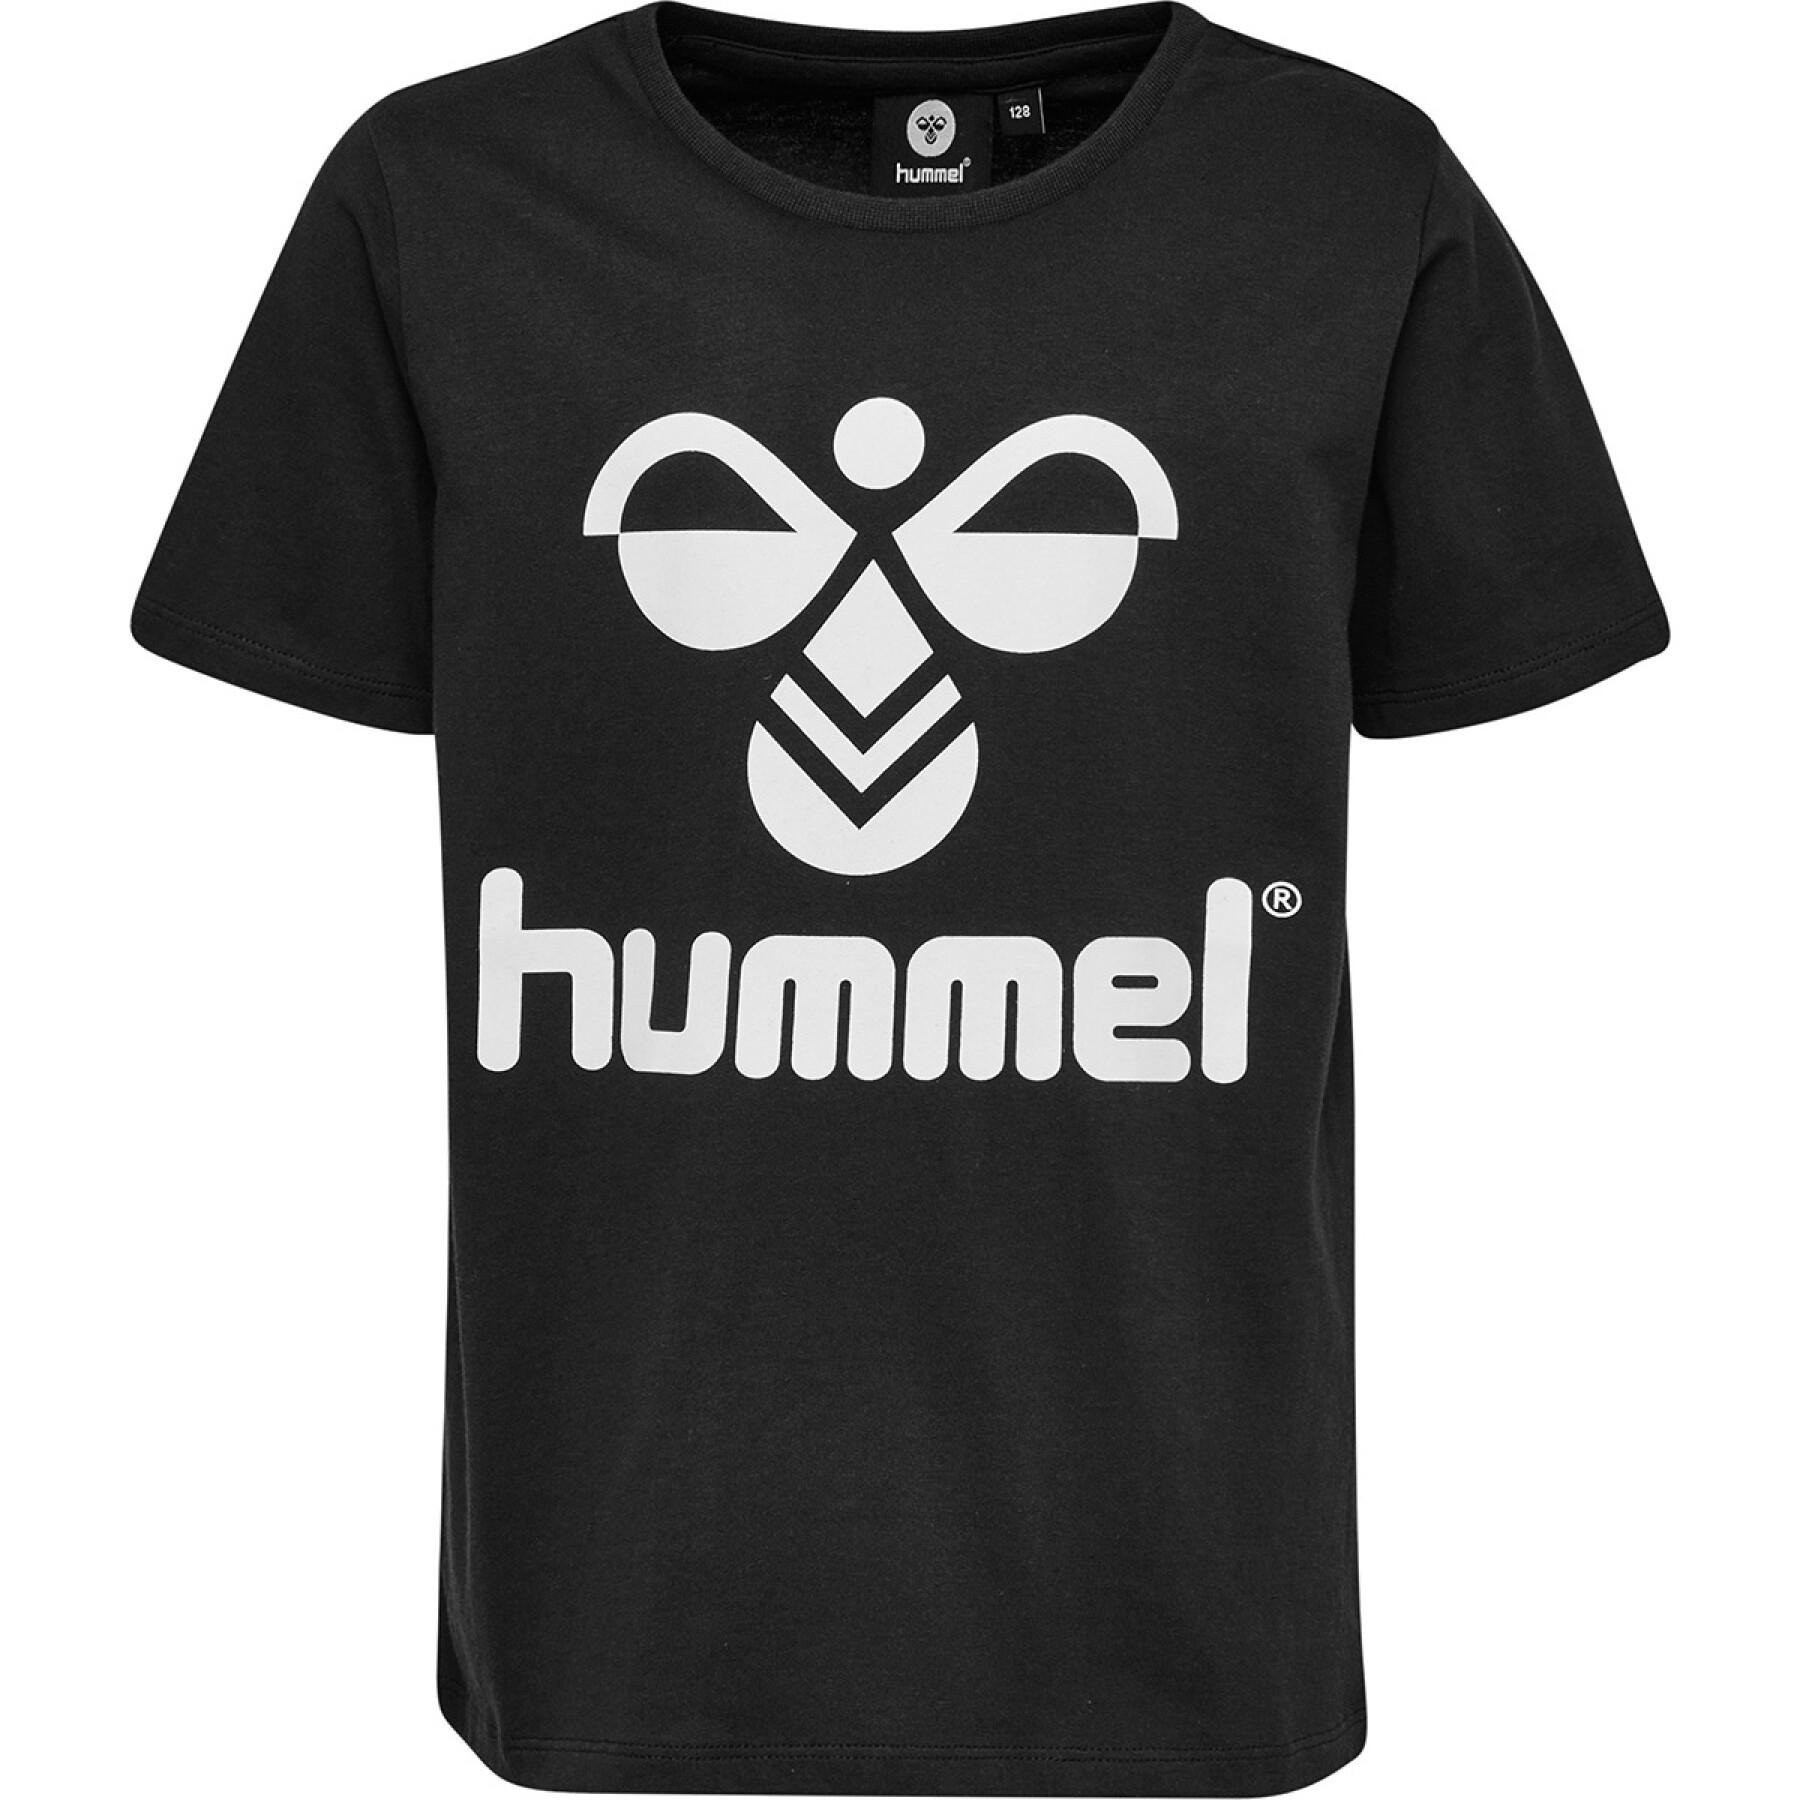 T-shirt enfant Hummel hmltres